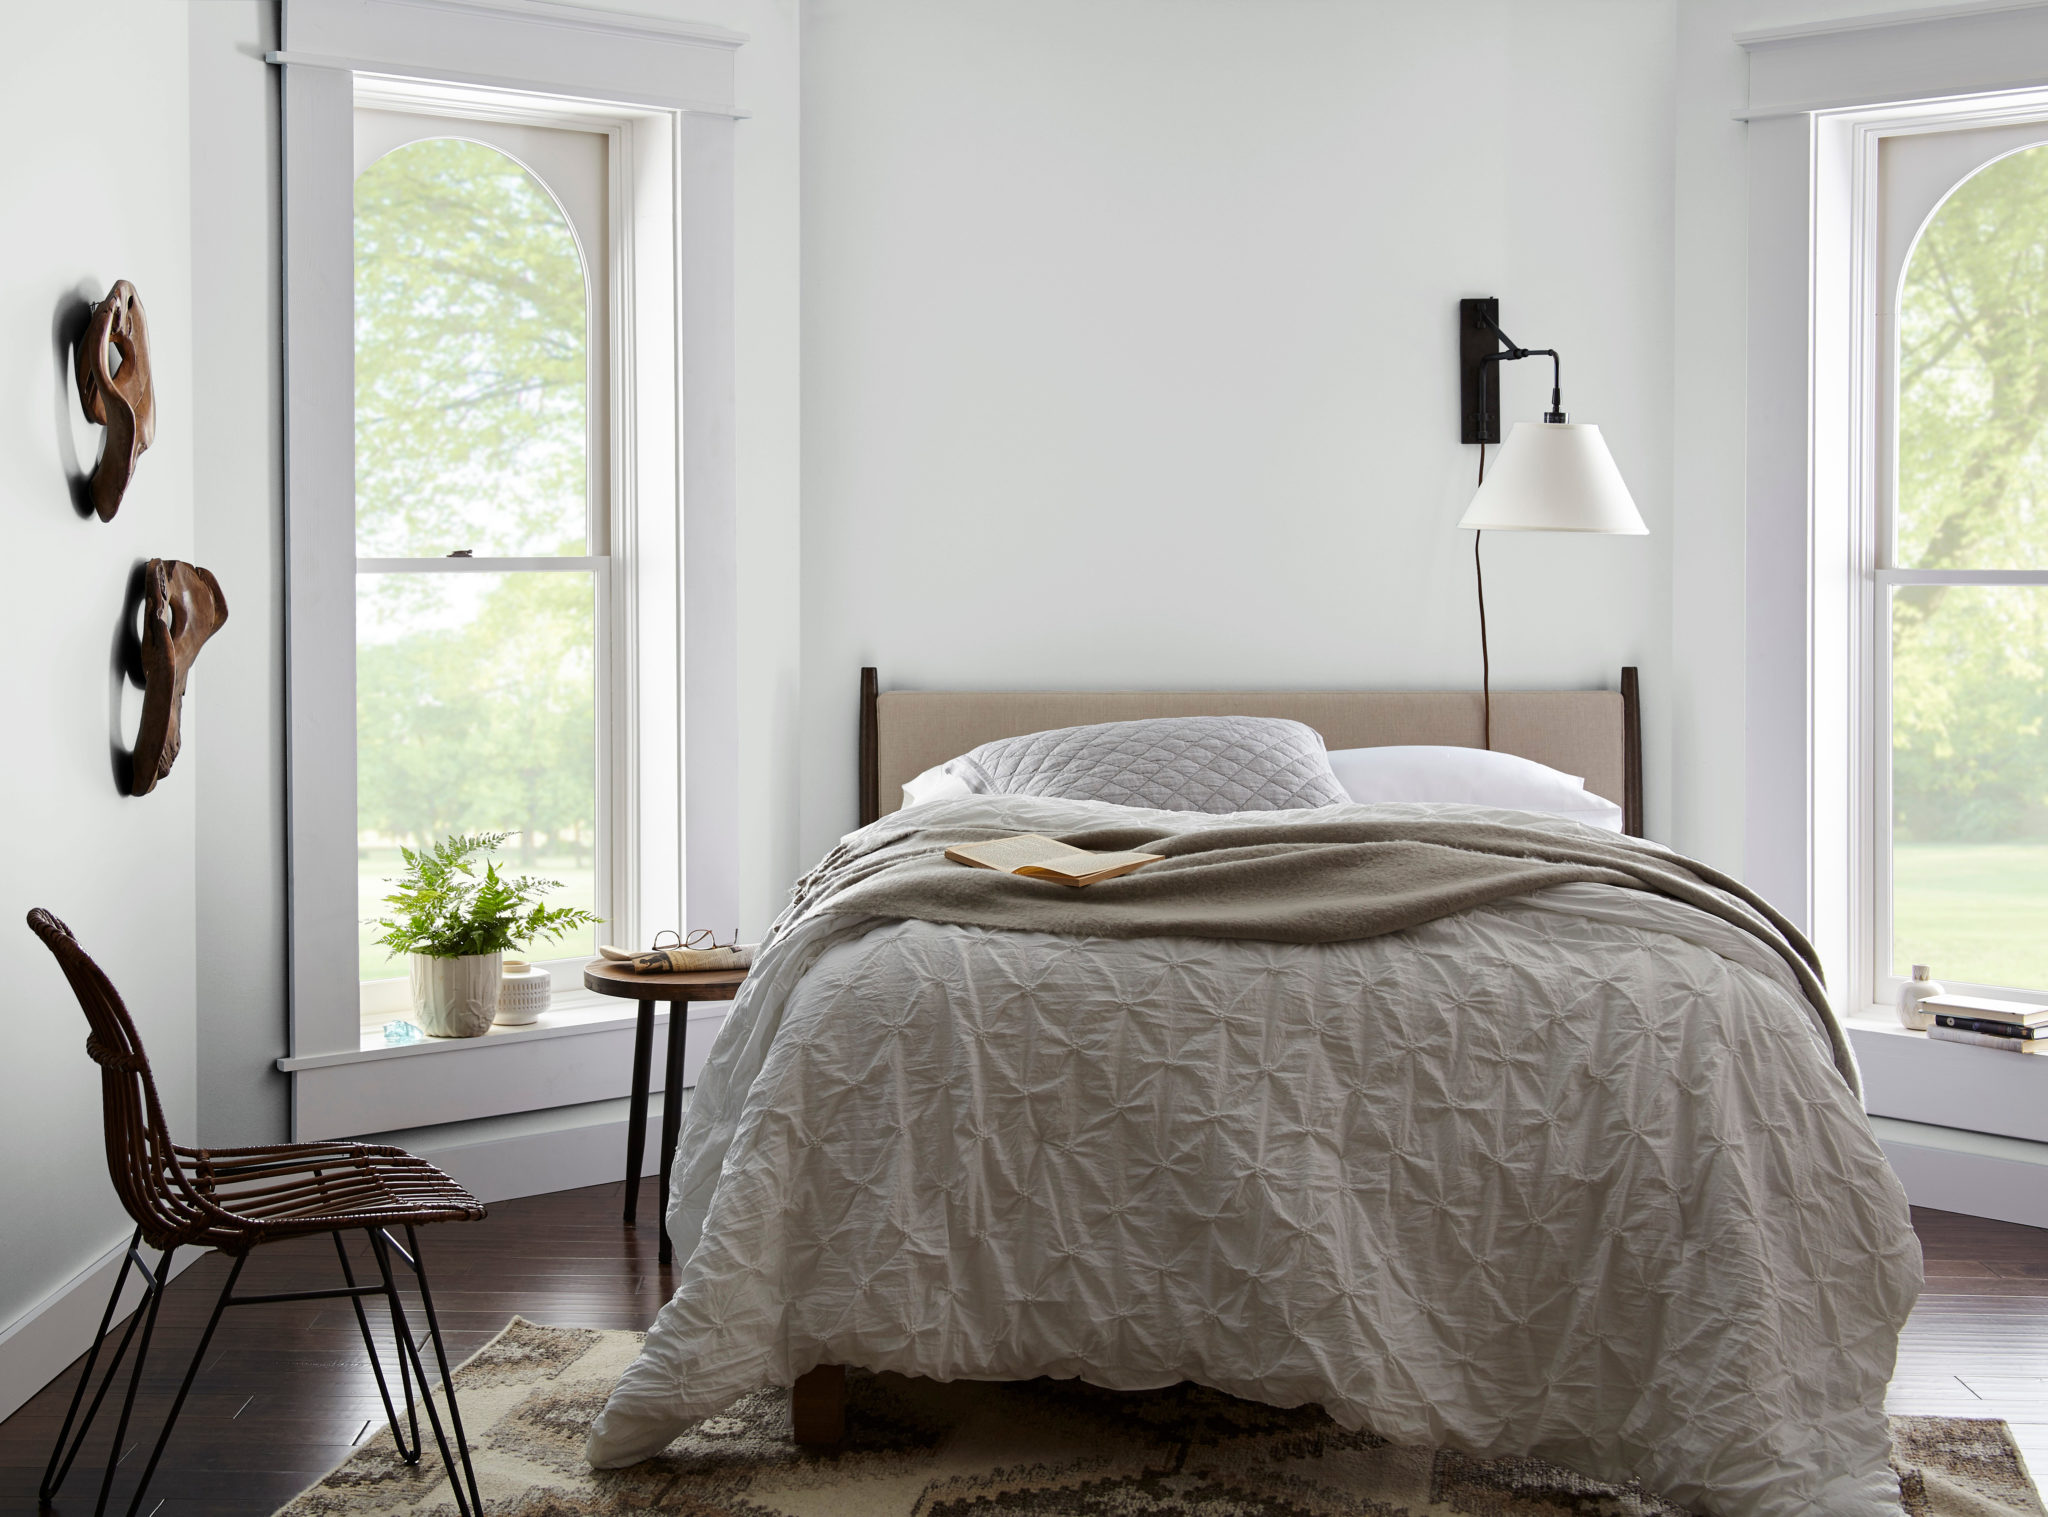 Une chambre décontractée et éclectique avec des meubles simples et des éléments décoratifs en bois, la couleur présentée sur les murs est un blanc froid appelé Givre.